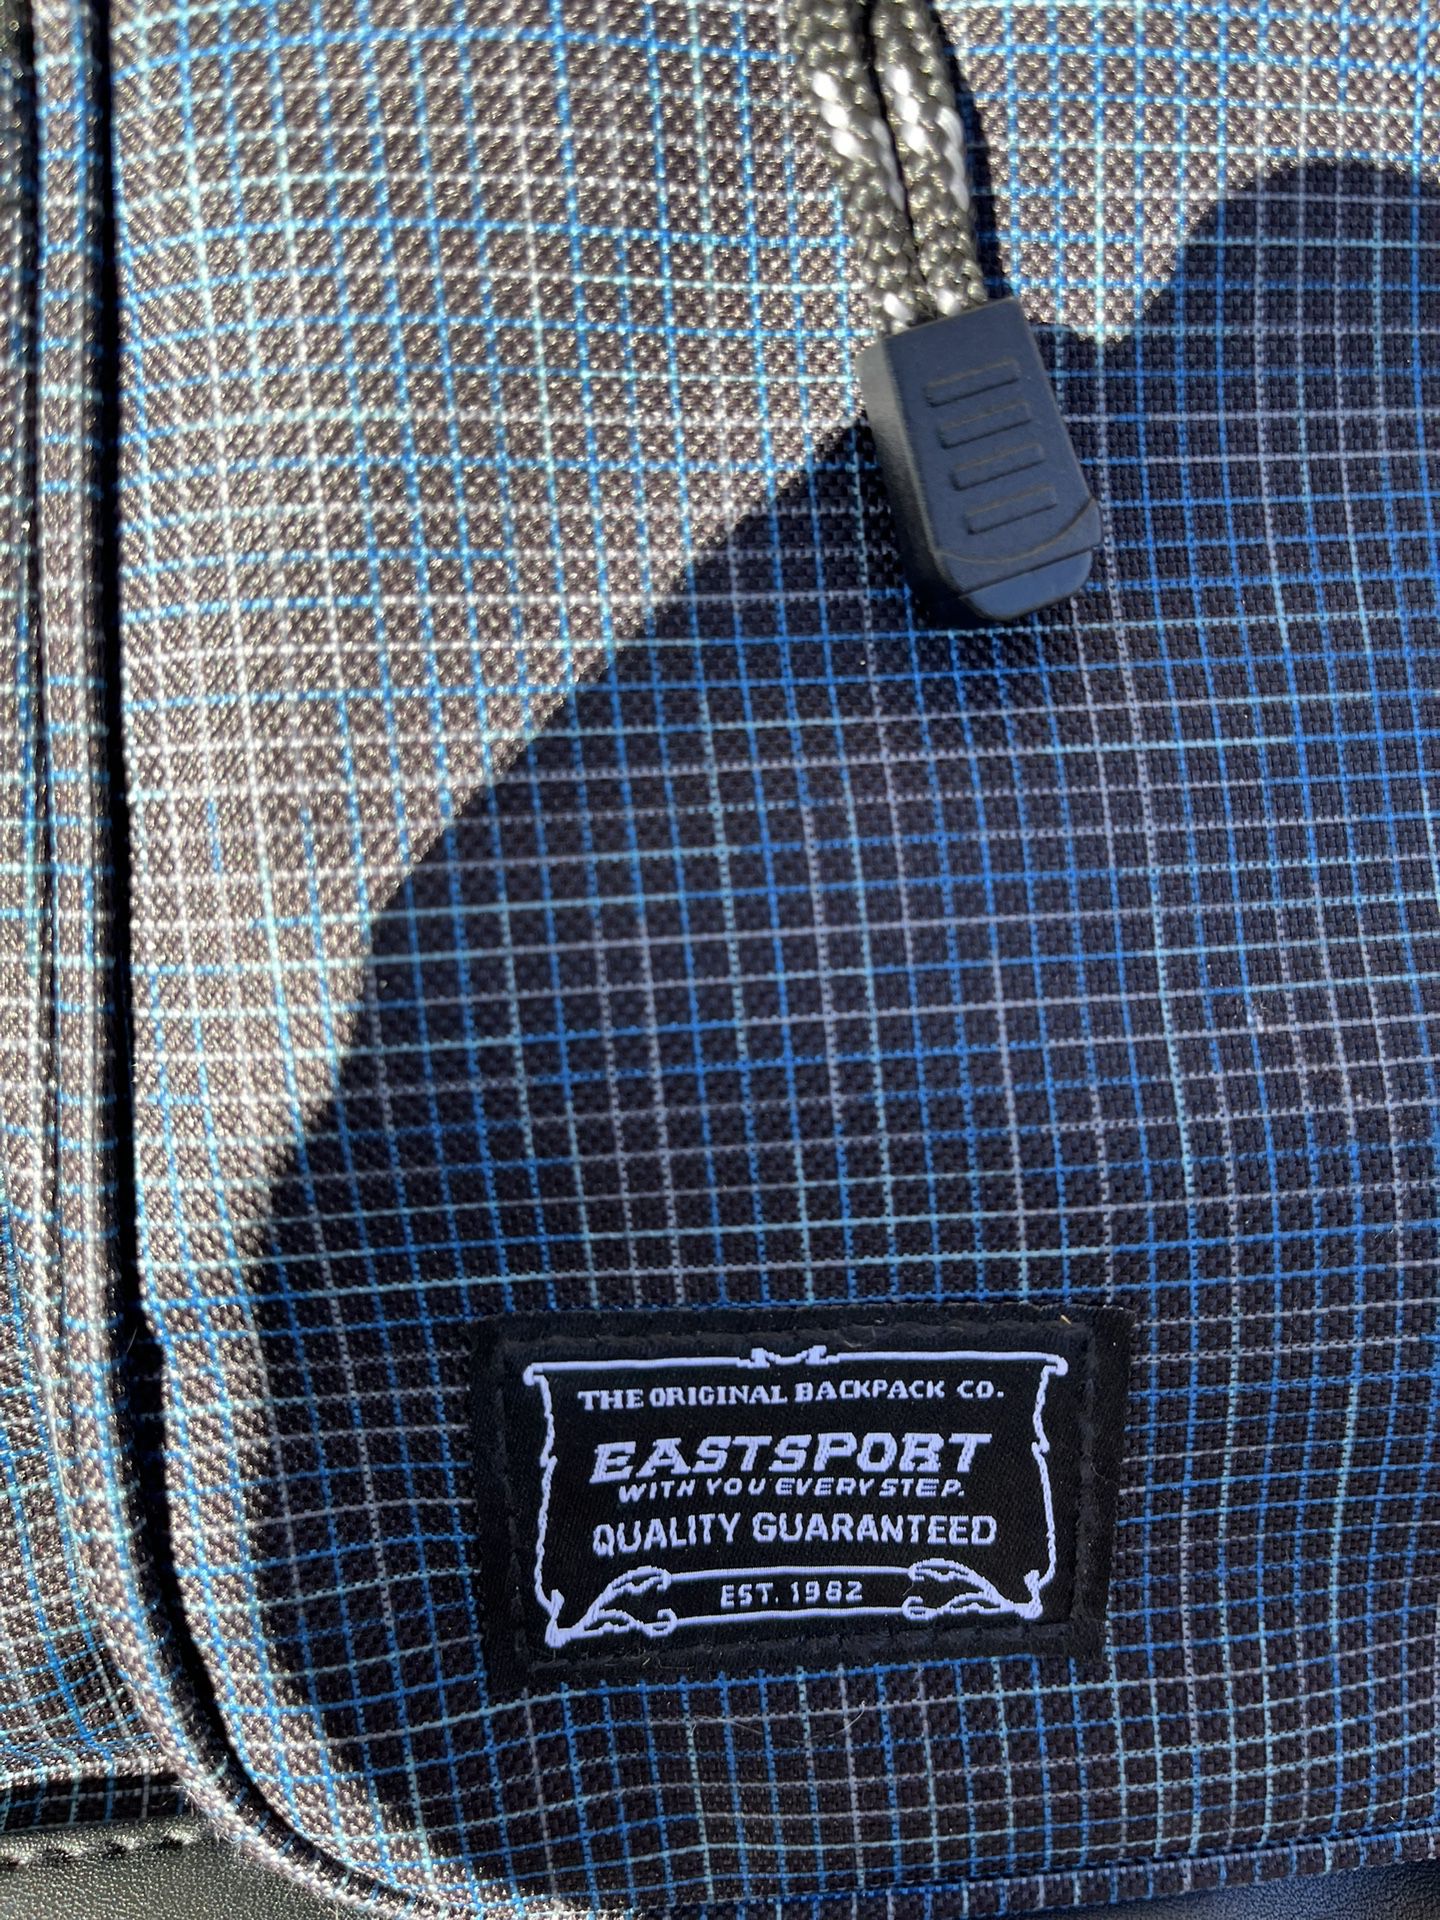 Eastsport Backpack 